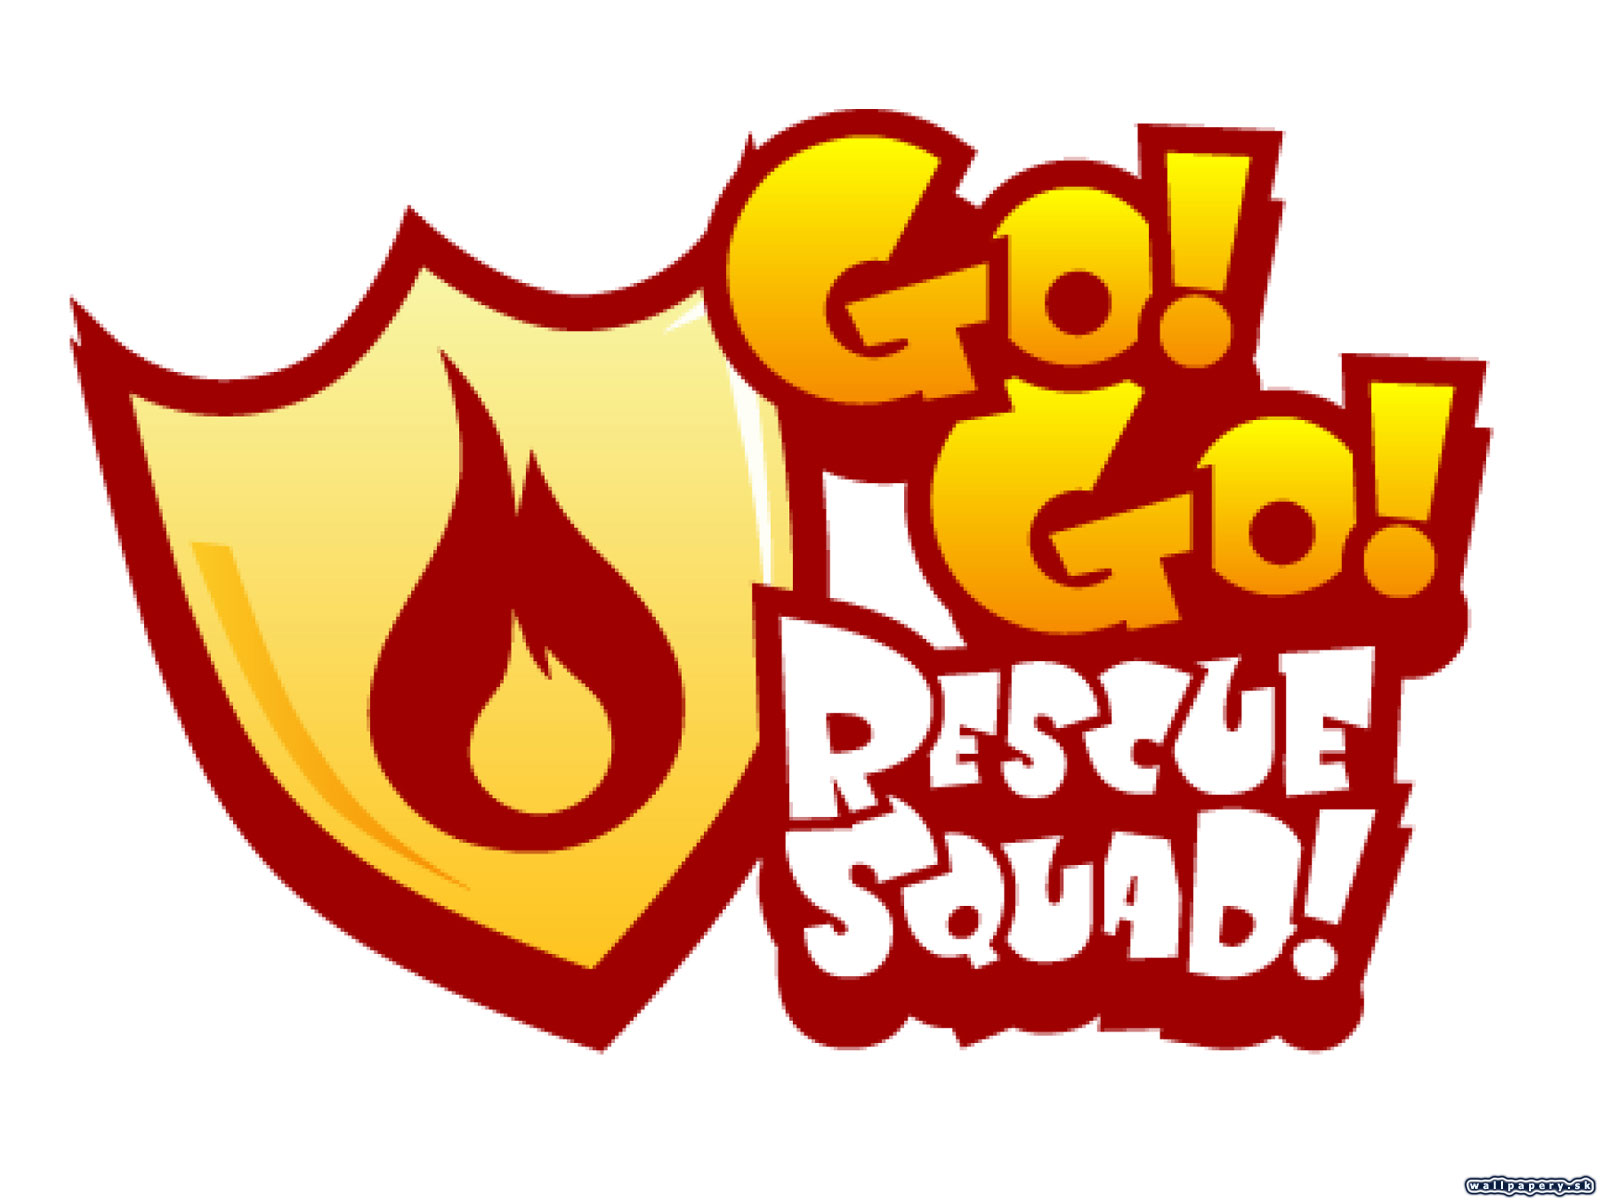 Go! Go! Rescue Squad! - wallpaper 2